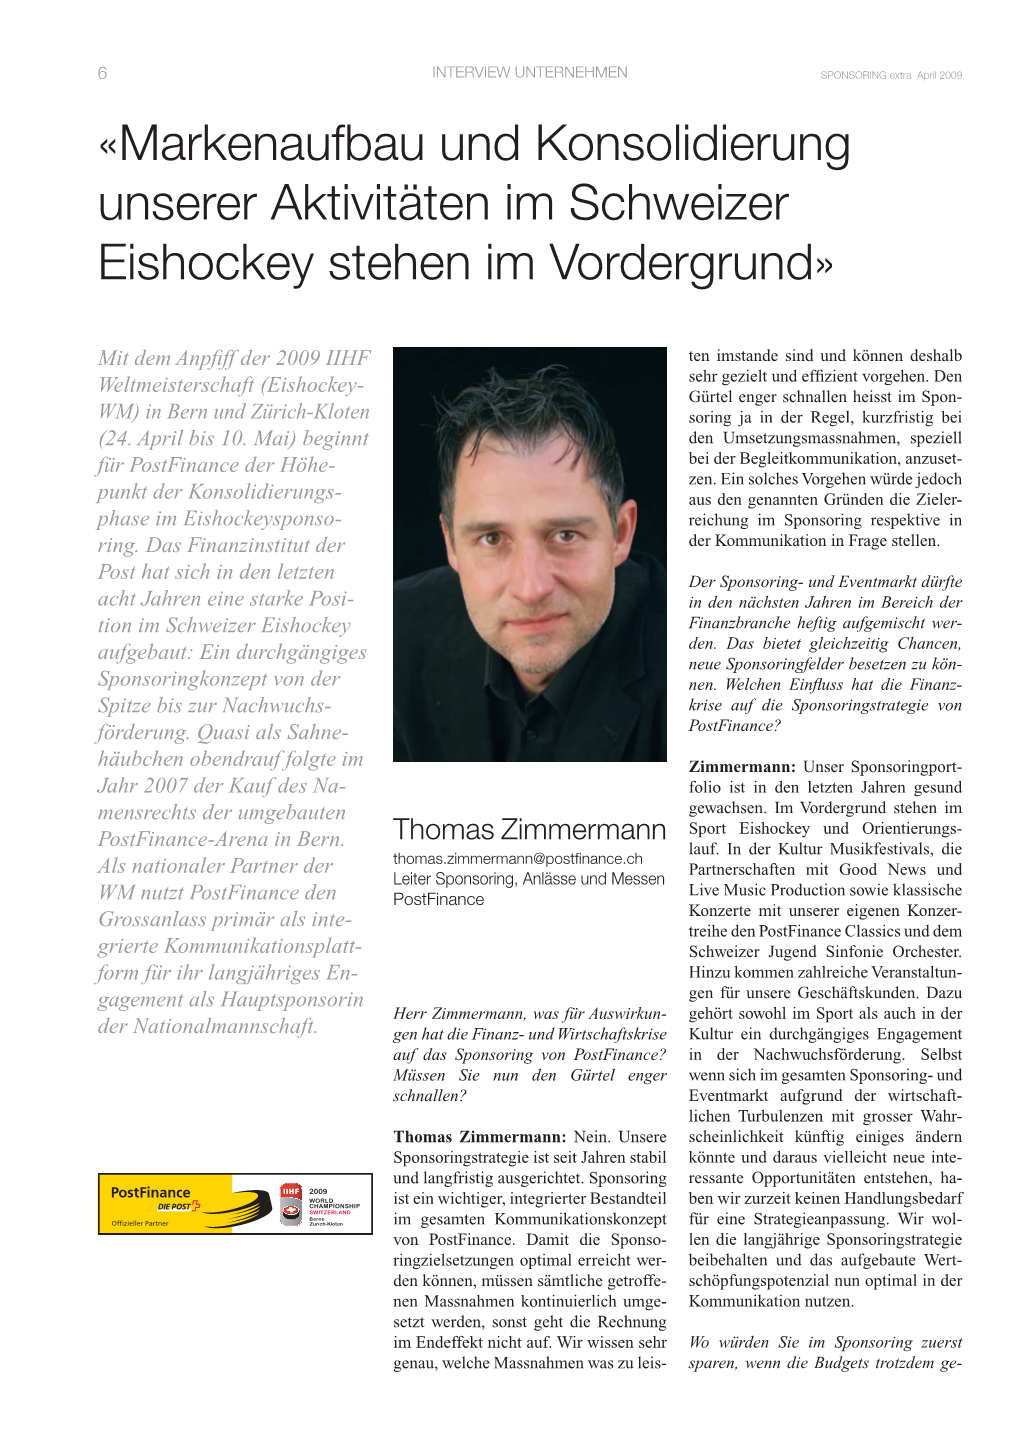 Markenaufbau Und Konsolidierung Unserer Aktivitäten Im Schweizer Eishockey Stehen Im Vordergrund»